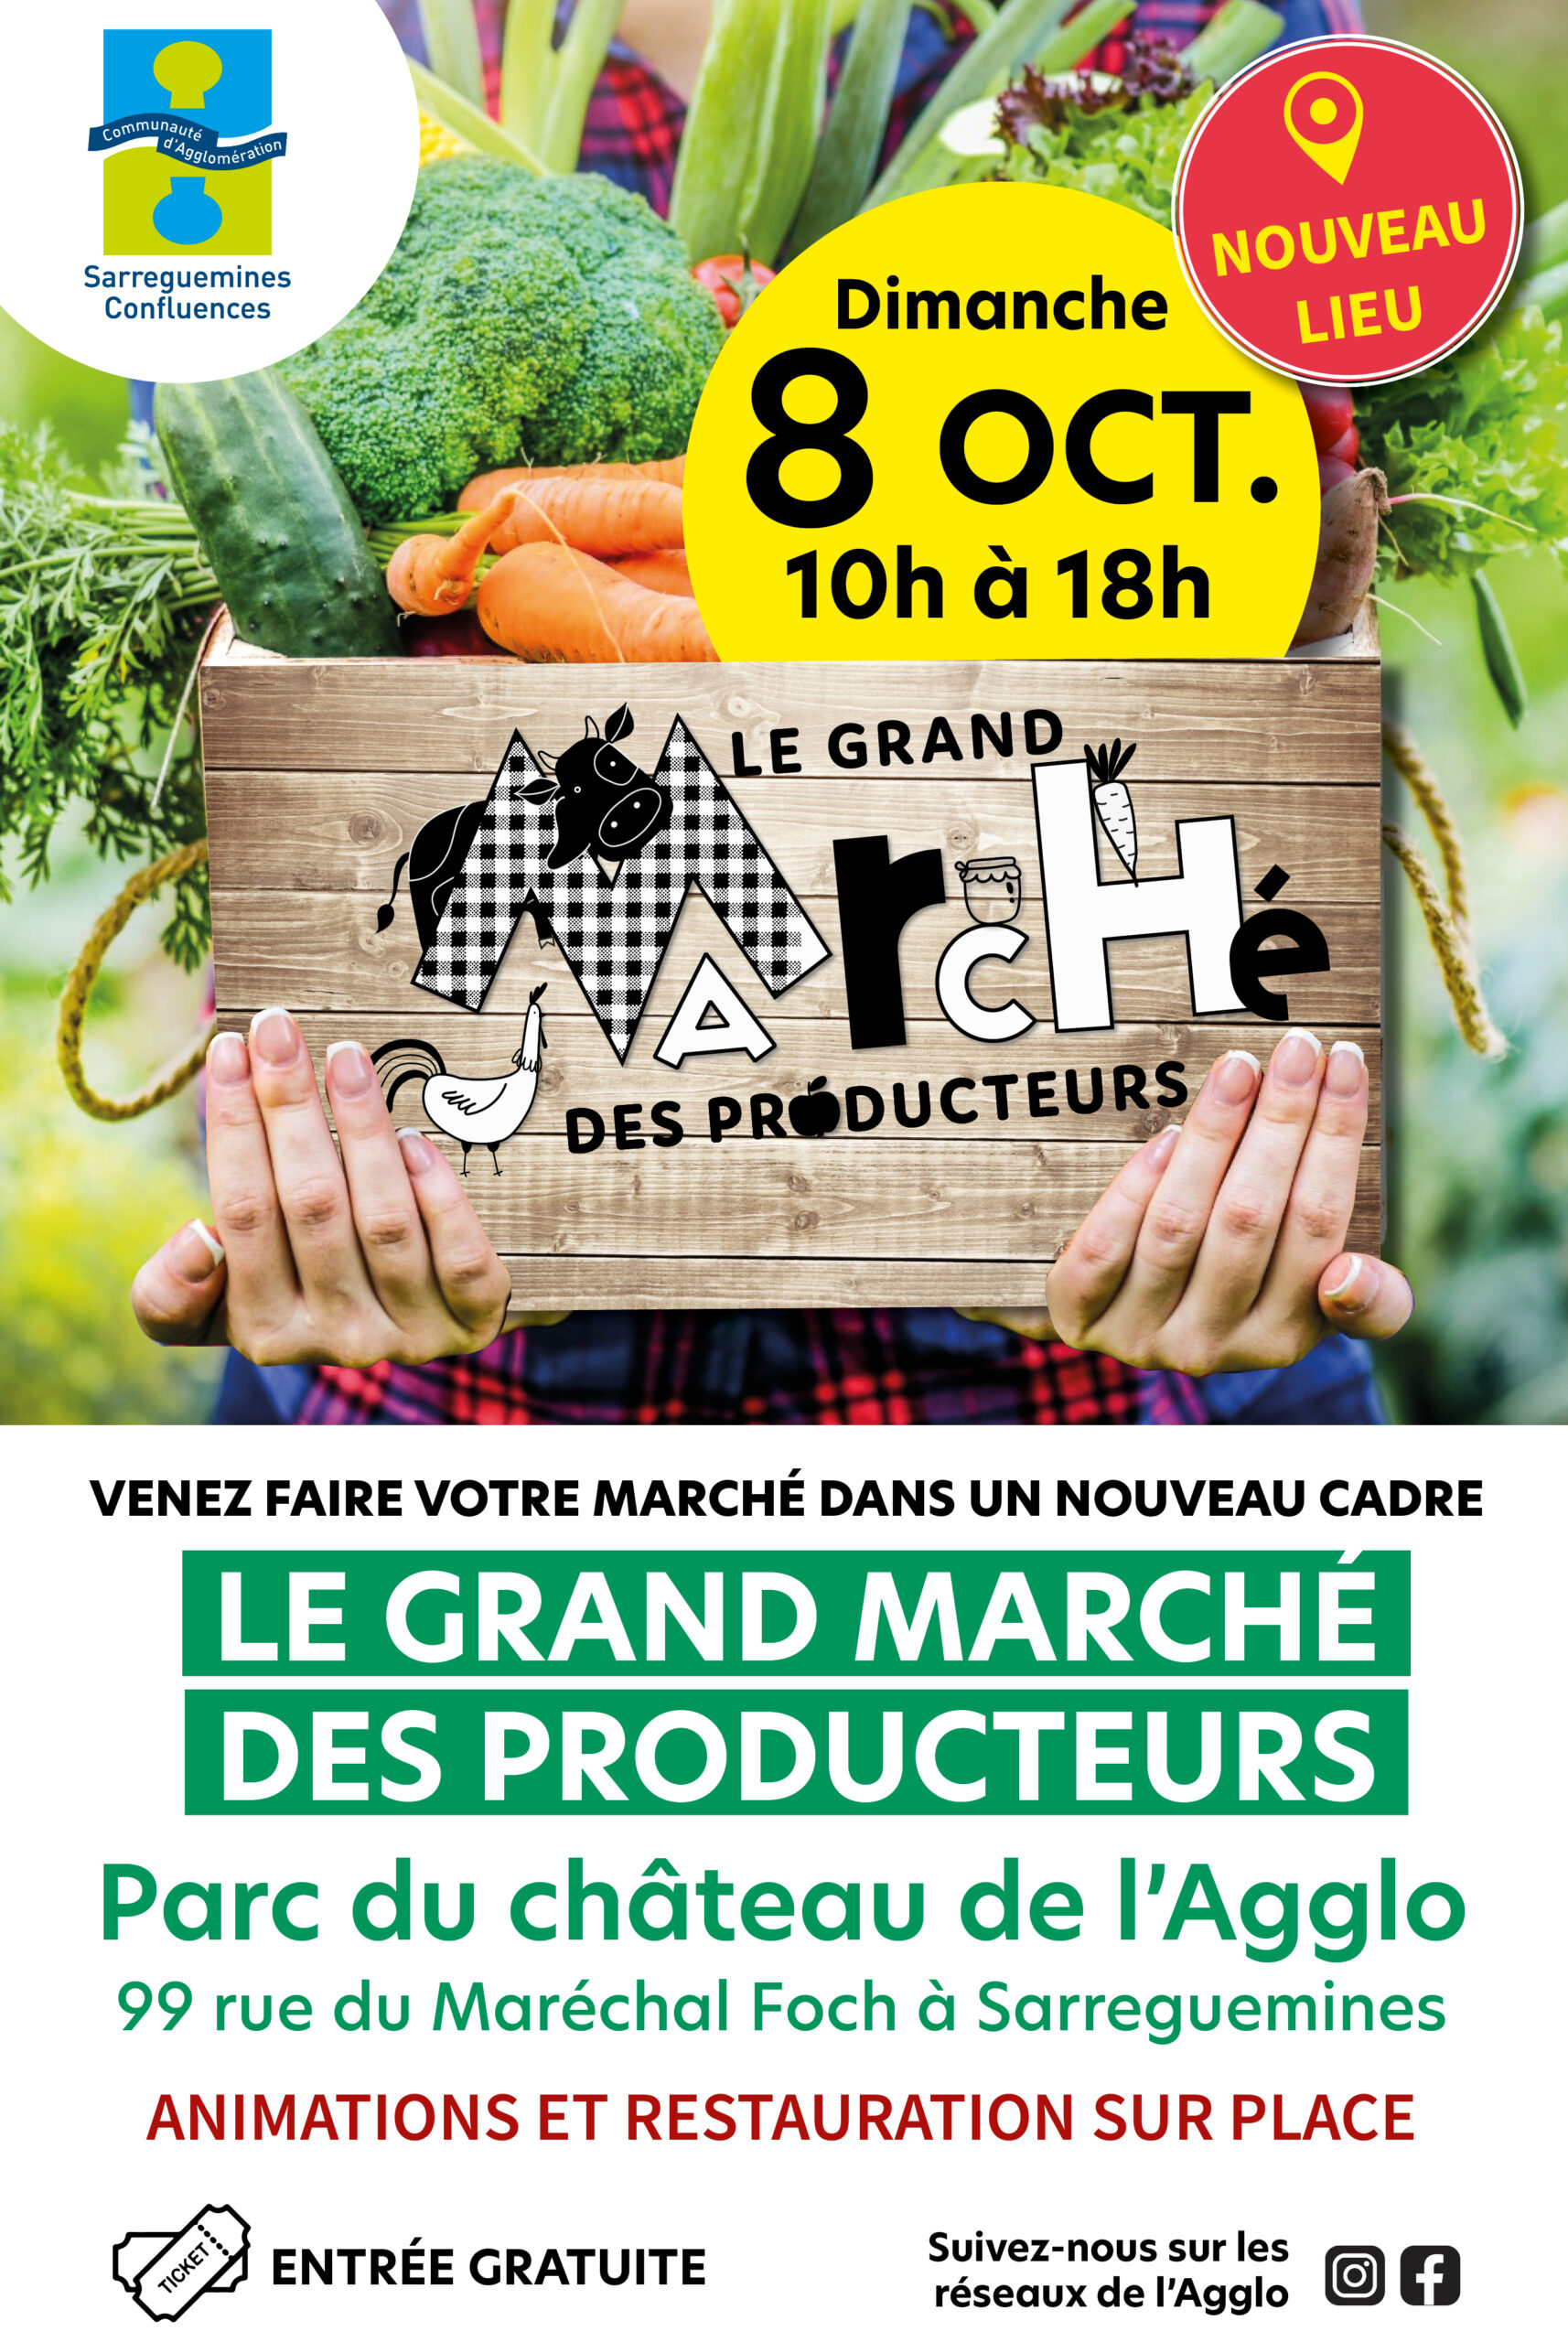 Grand Marché des Producteurs le 8 octobre         // NOUVEAU LIEU //